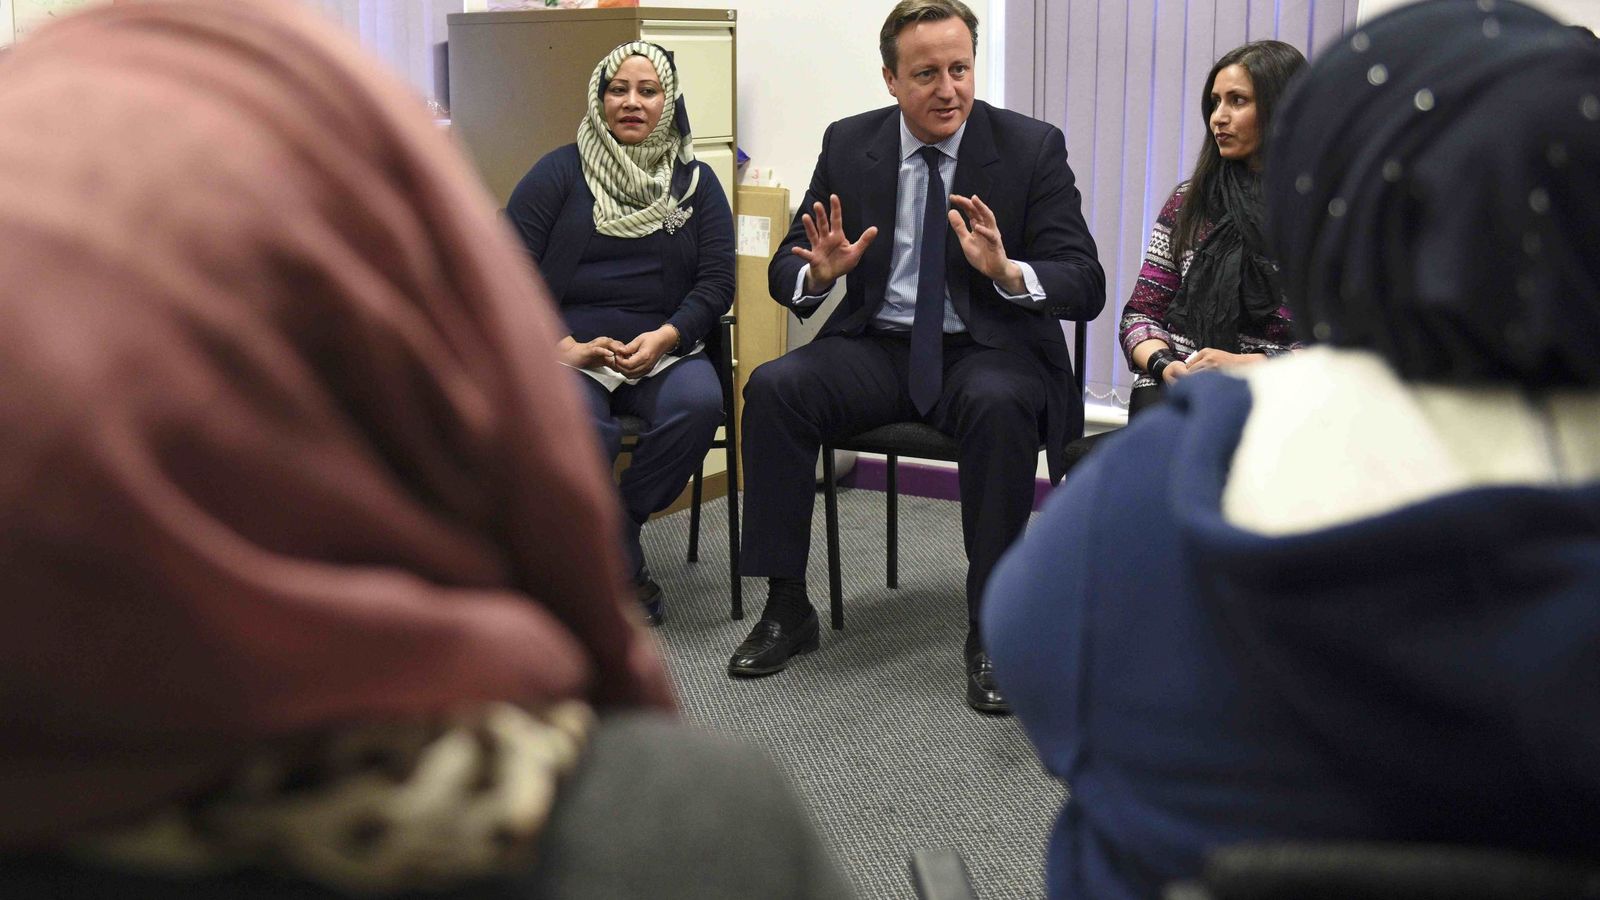 Foto: Cameron habla con mujeres migrantes durante una clase de inglés en un centro de Leeds, el 18 de enero de 2016 (Reuters).